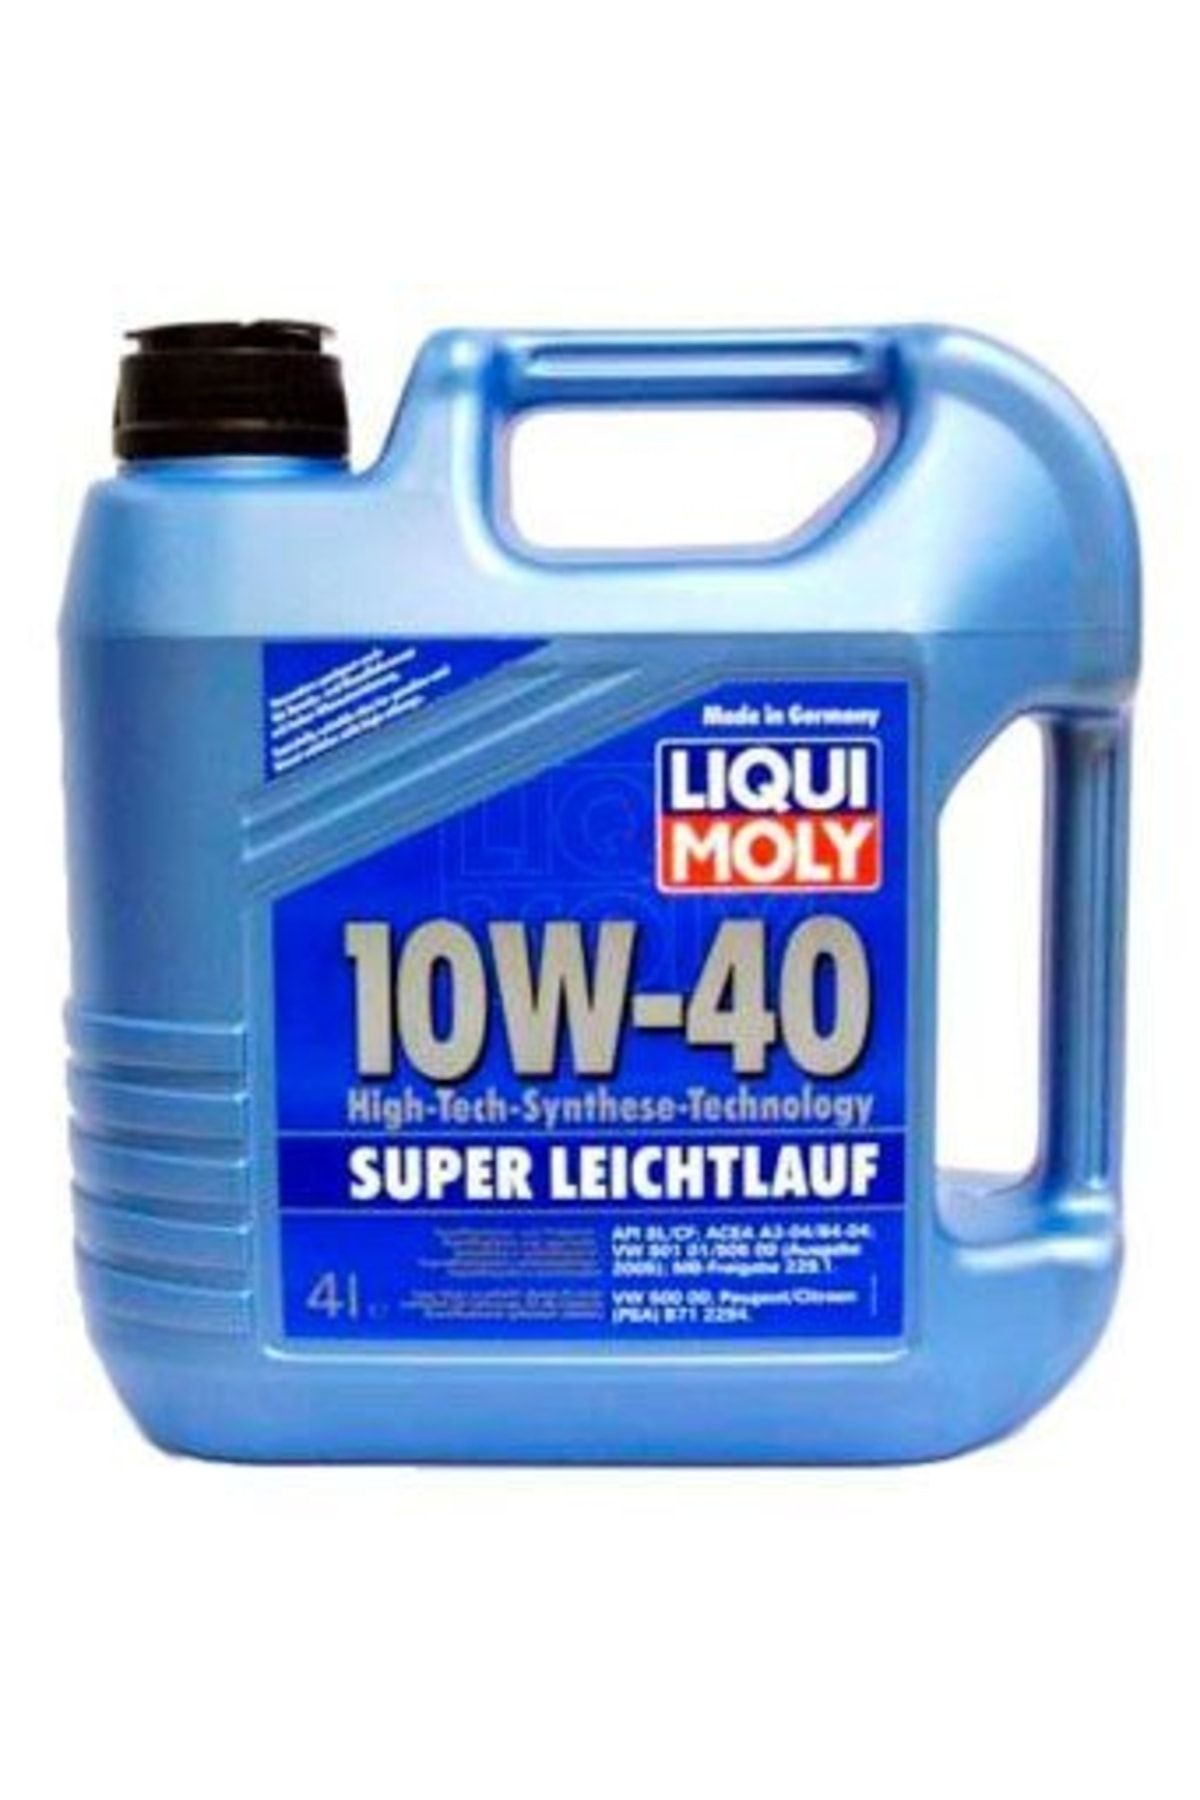 Моторные масла liqui moly 4 л. Ликви моли 10w 40 super Leichtlauf. Моторное масло Liqui Moly super Leichtlauf 10w-40 4 л. Liqui Moly super Leichtlauf 10w-40 5 л артикул. Ликви моли супер лайчлауф 10w 40.